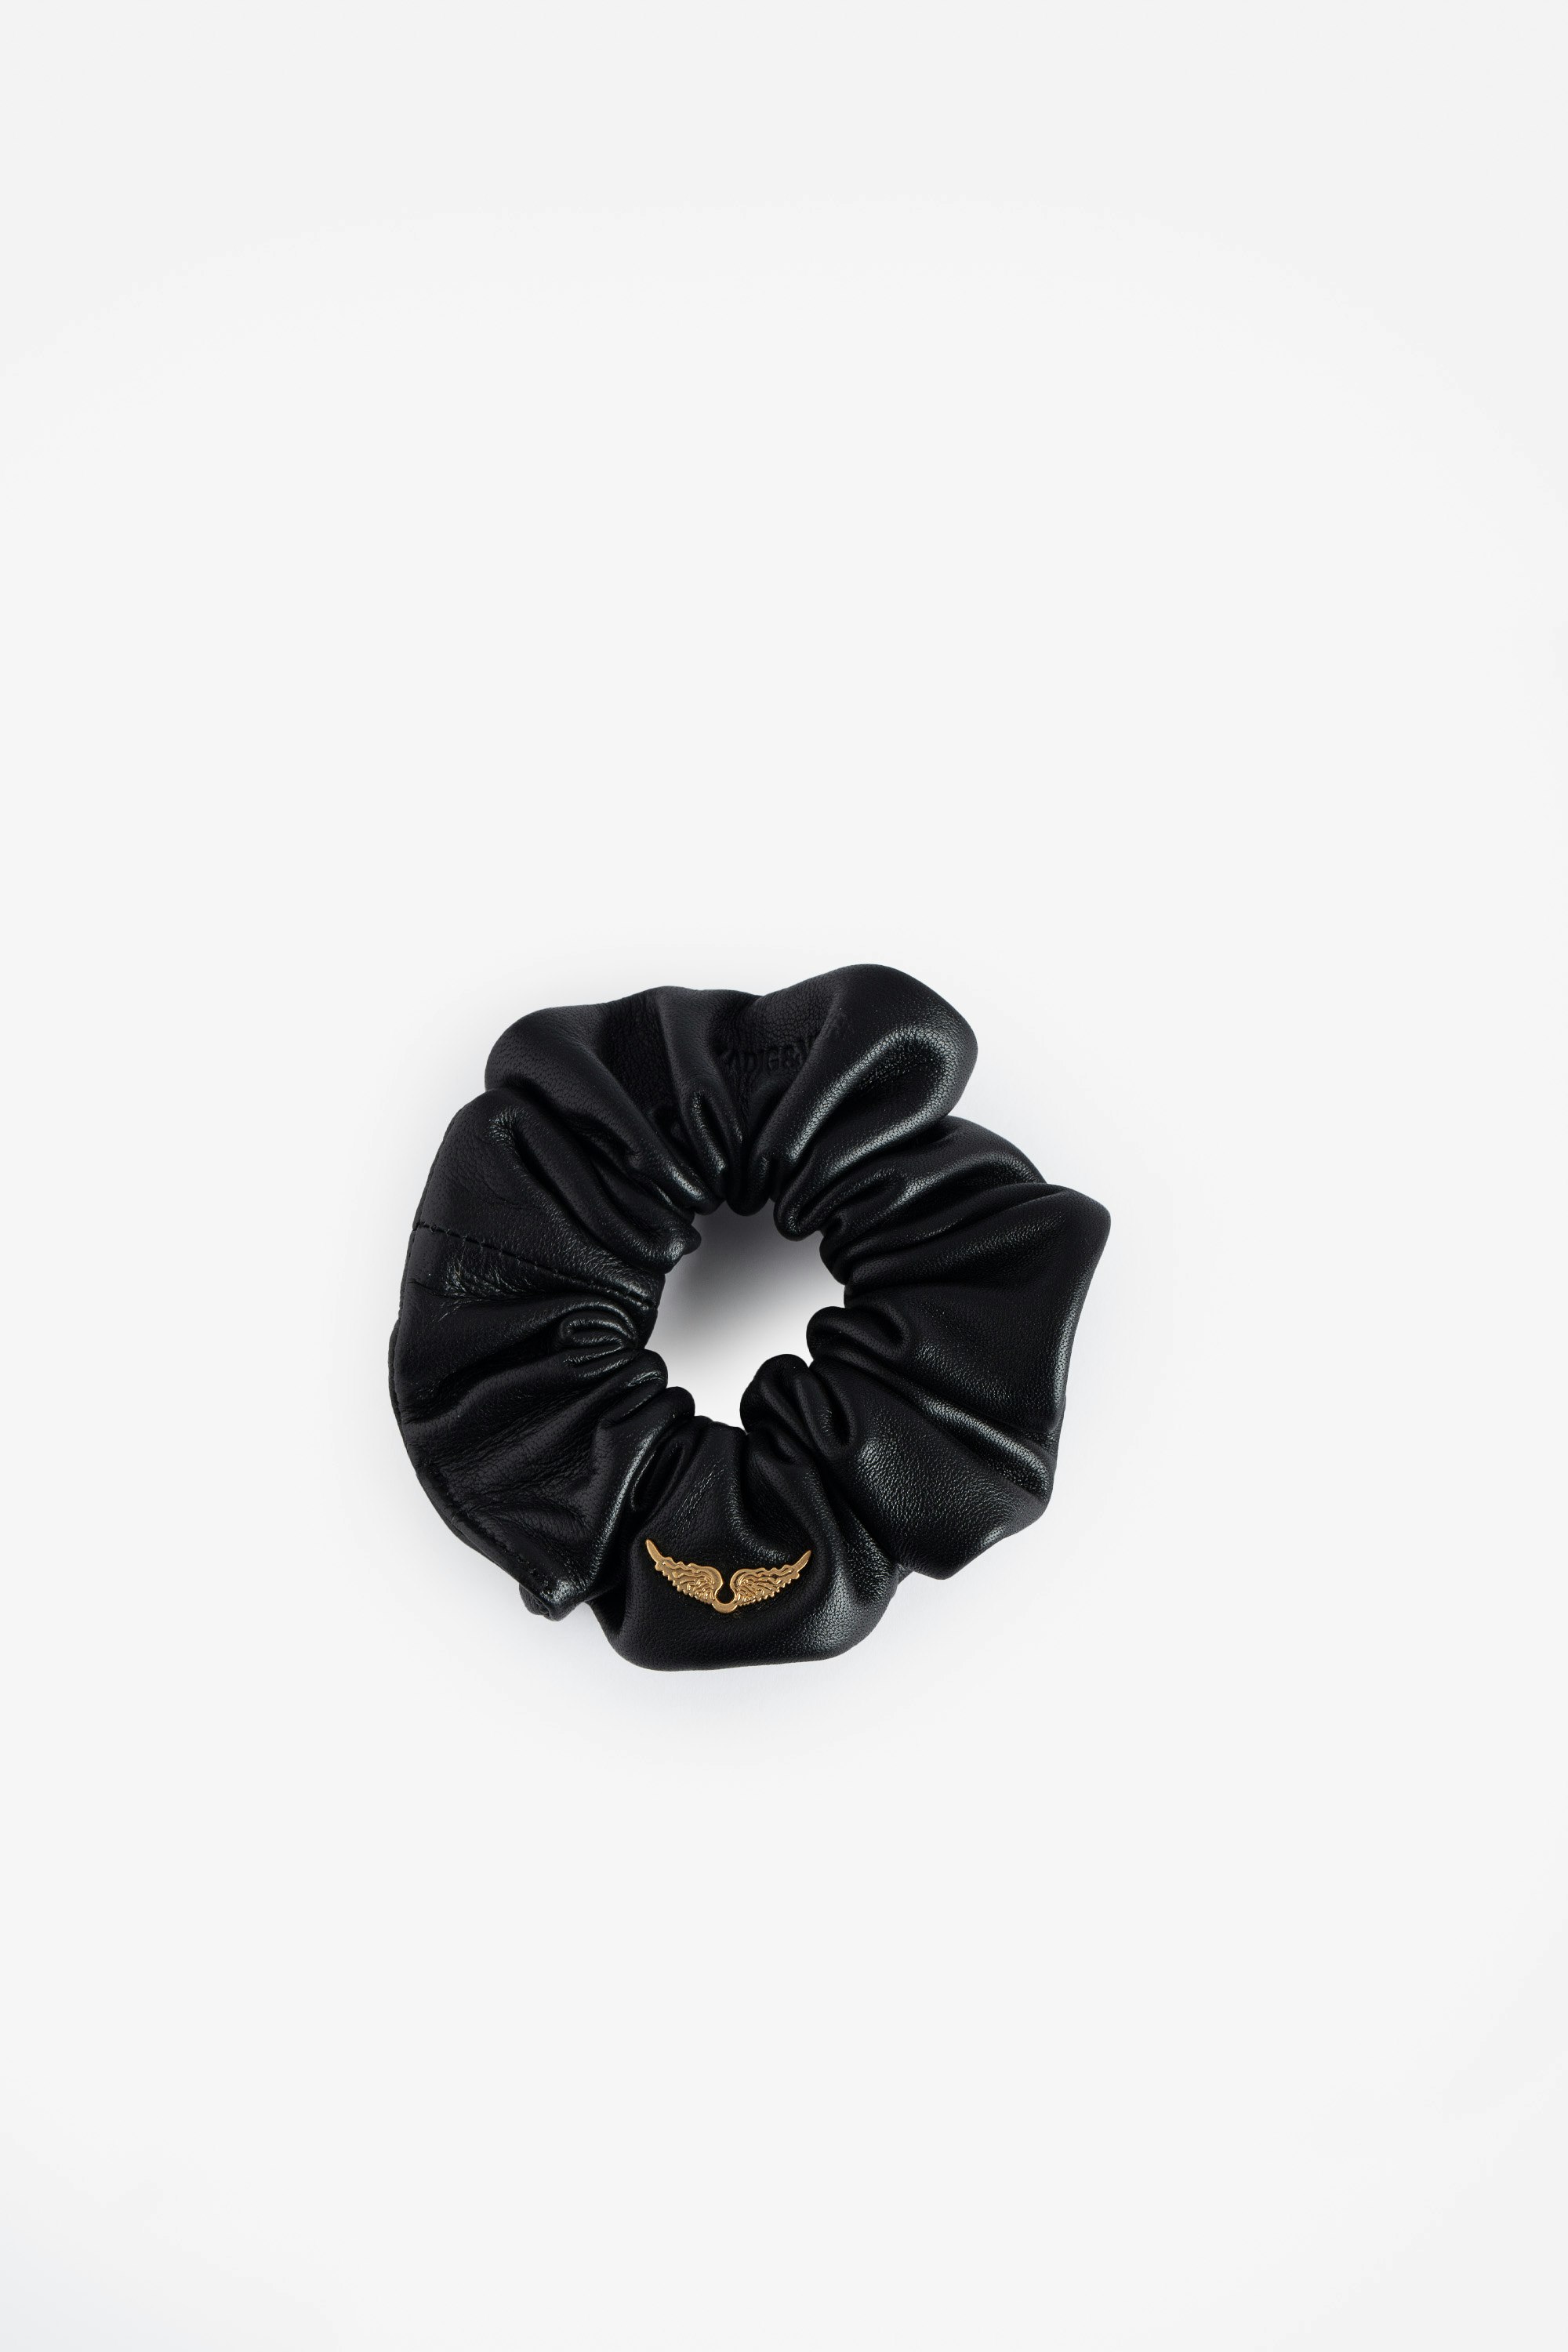 Elastique Chouchou - Chouchou Voltaire Vice en cuir noir à motifs ailes.